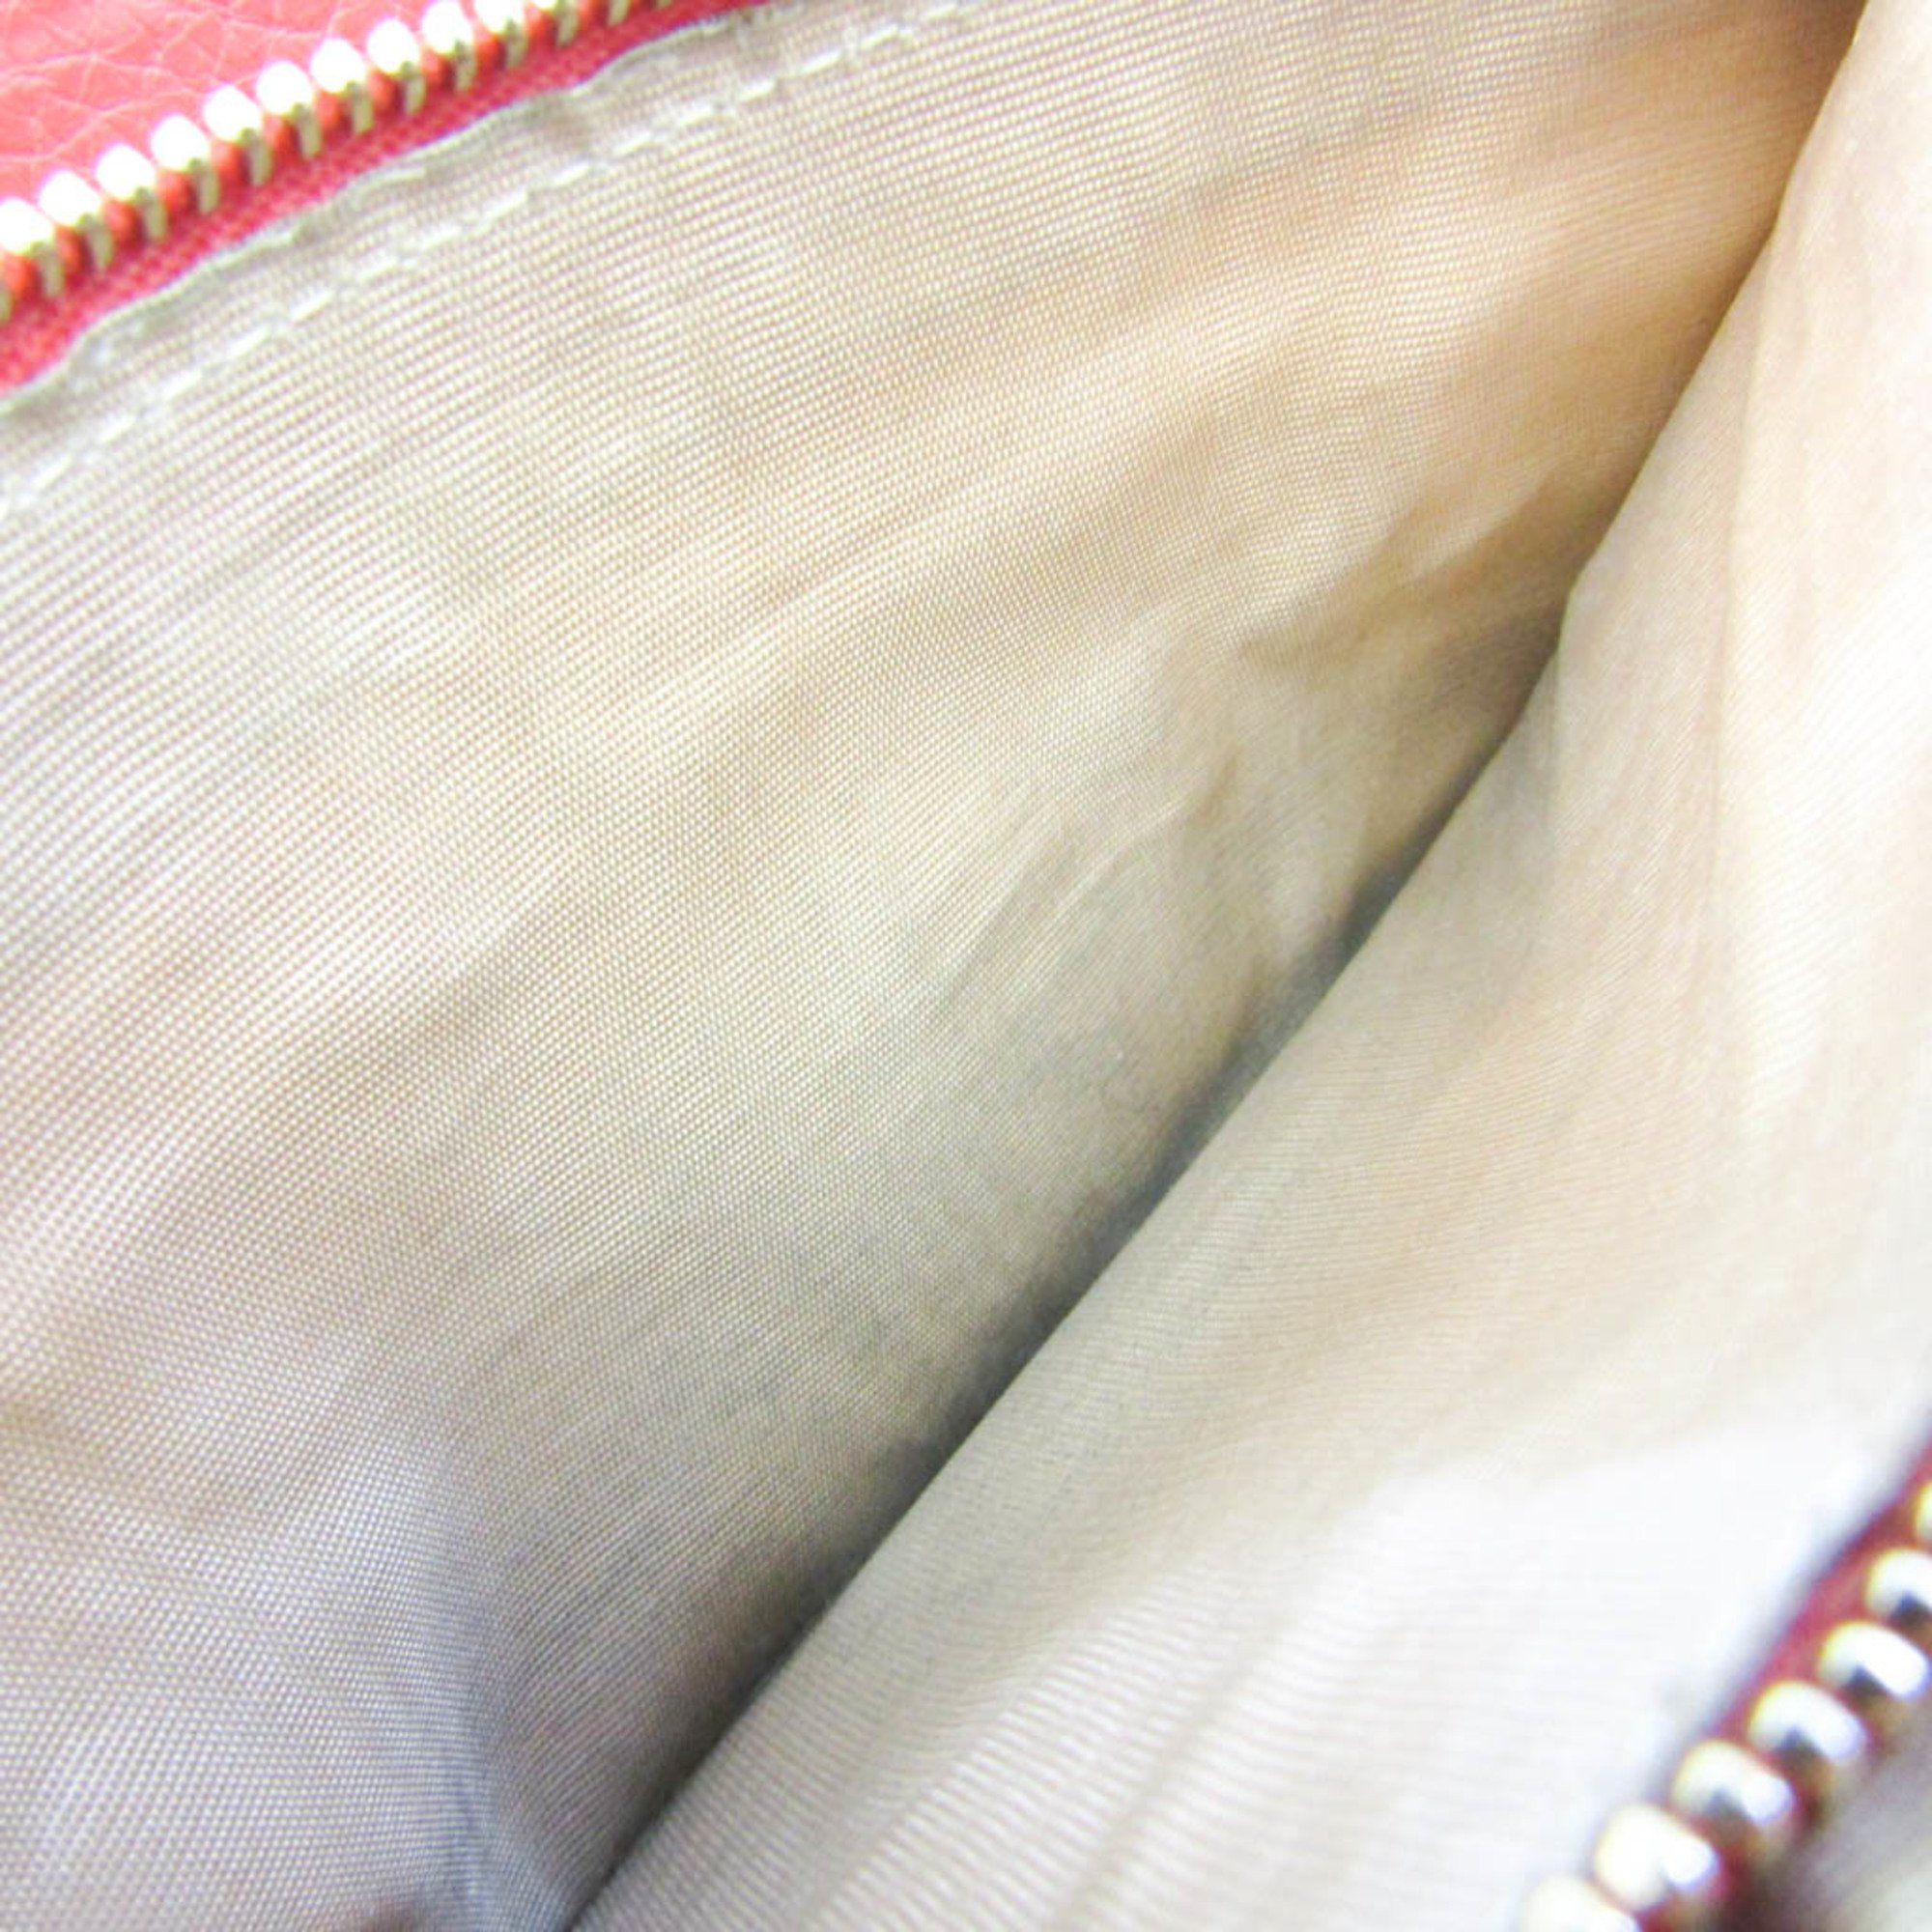 Bvlgari Logomania Women's Leather,Canvas Chain/Shoulder Wallet Beige,Pink Orange